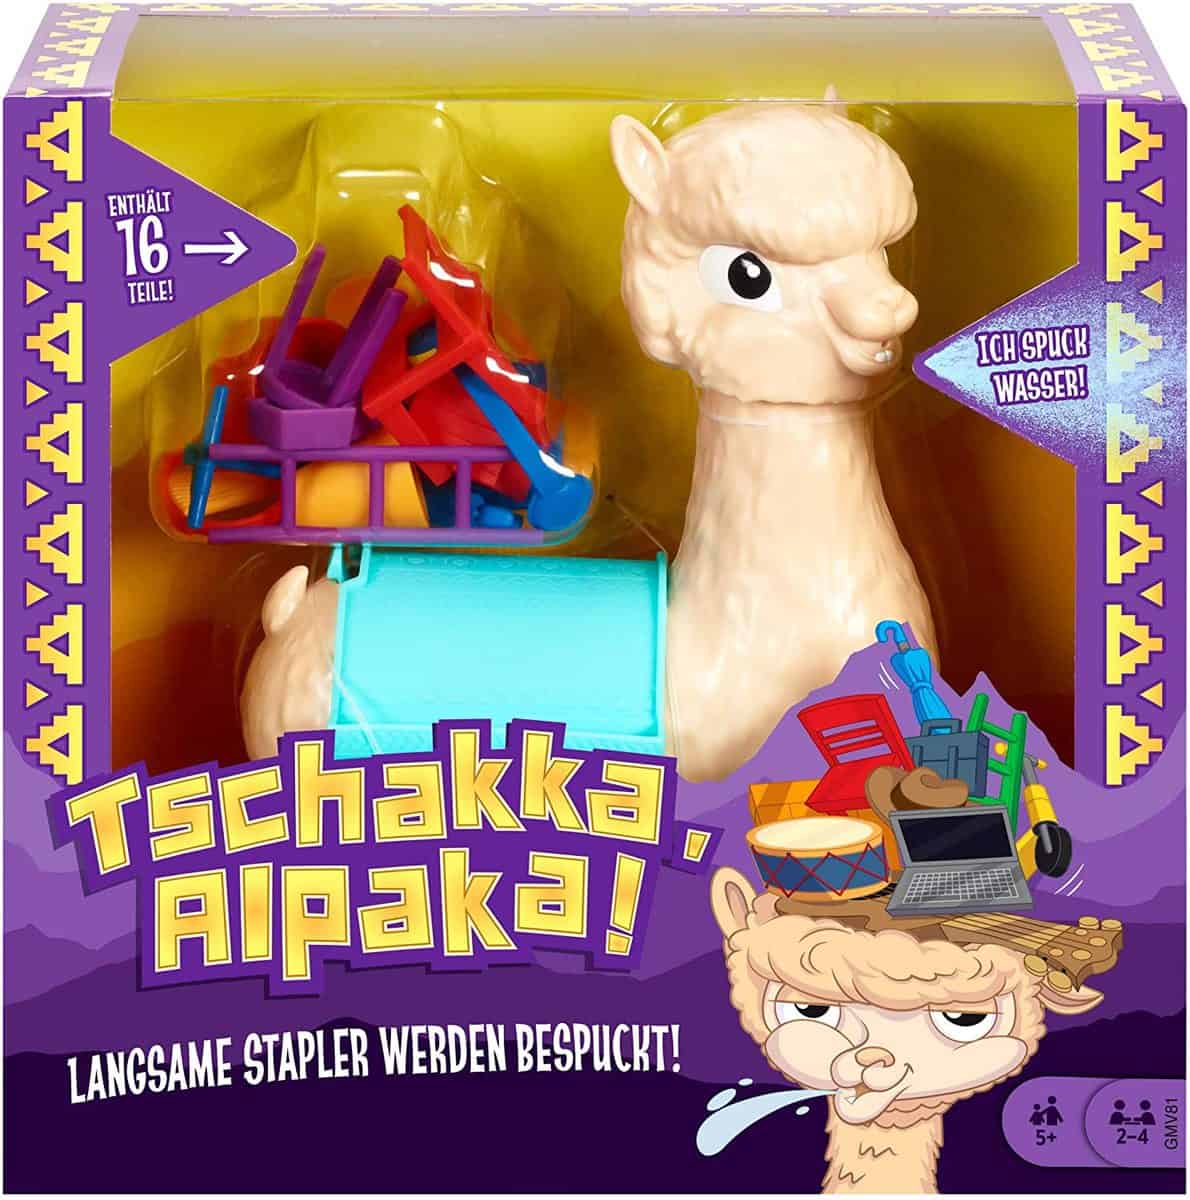 Mattel Games Tschakka, Alpaka! - Kinderspiel - für 8,04 € [Prime] statt 12,87 €